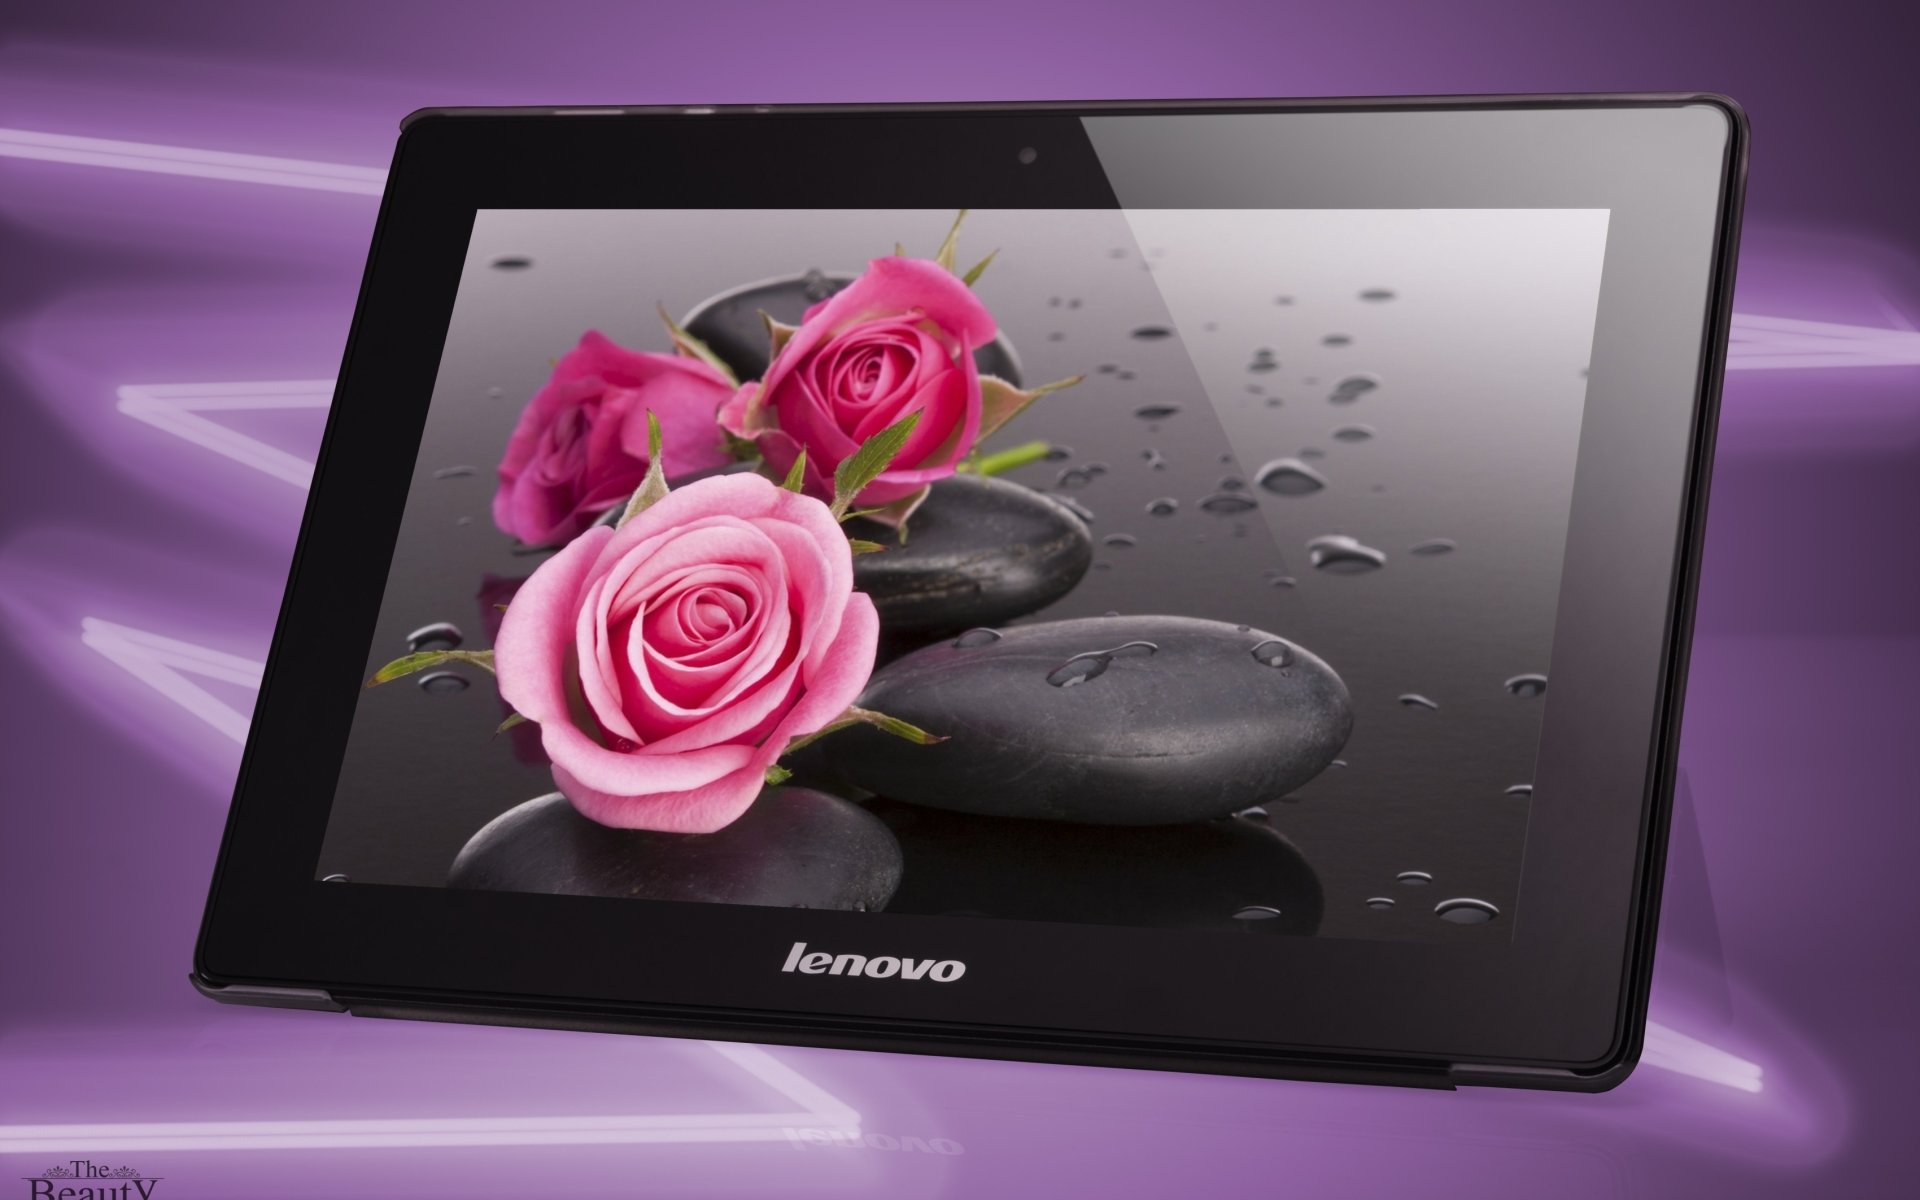 lenovo tablet fond d'écran,rose,produit,famille rose,rose,pétale